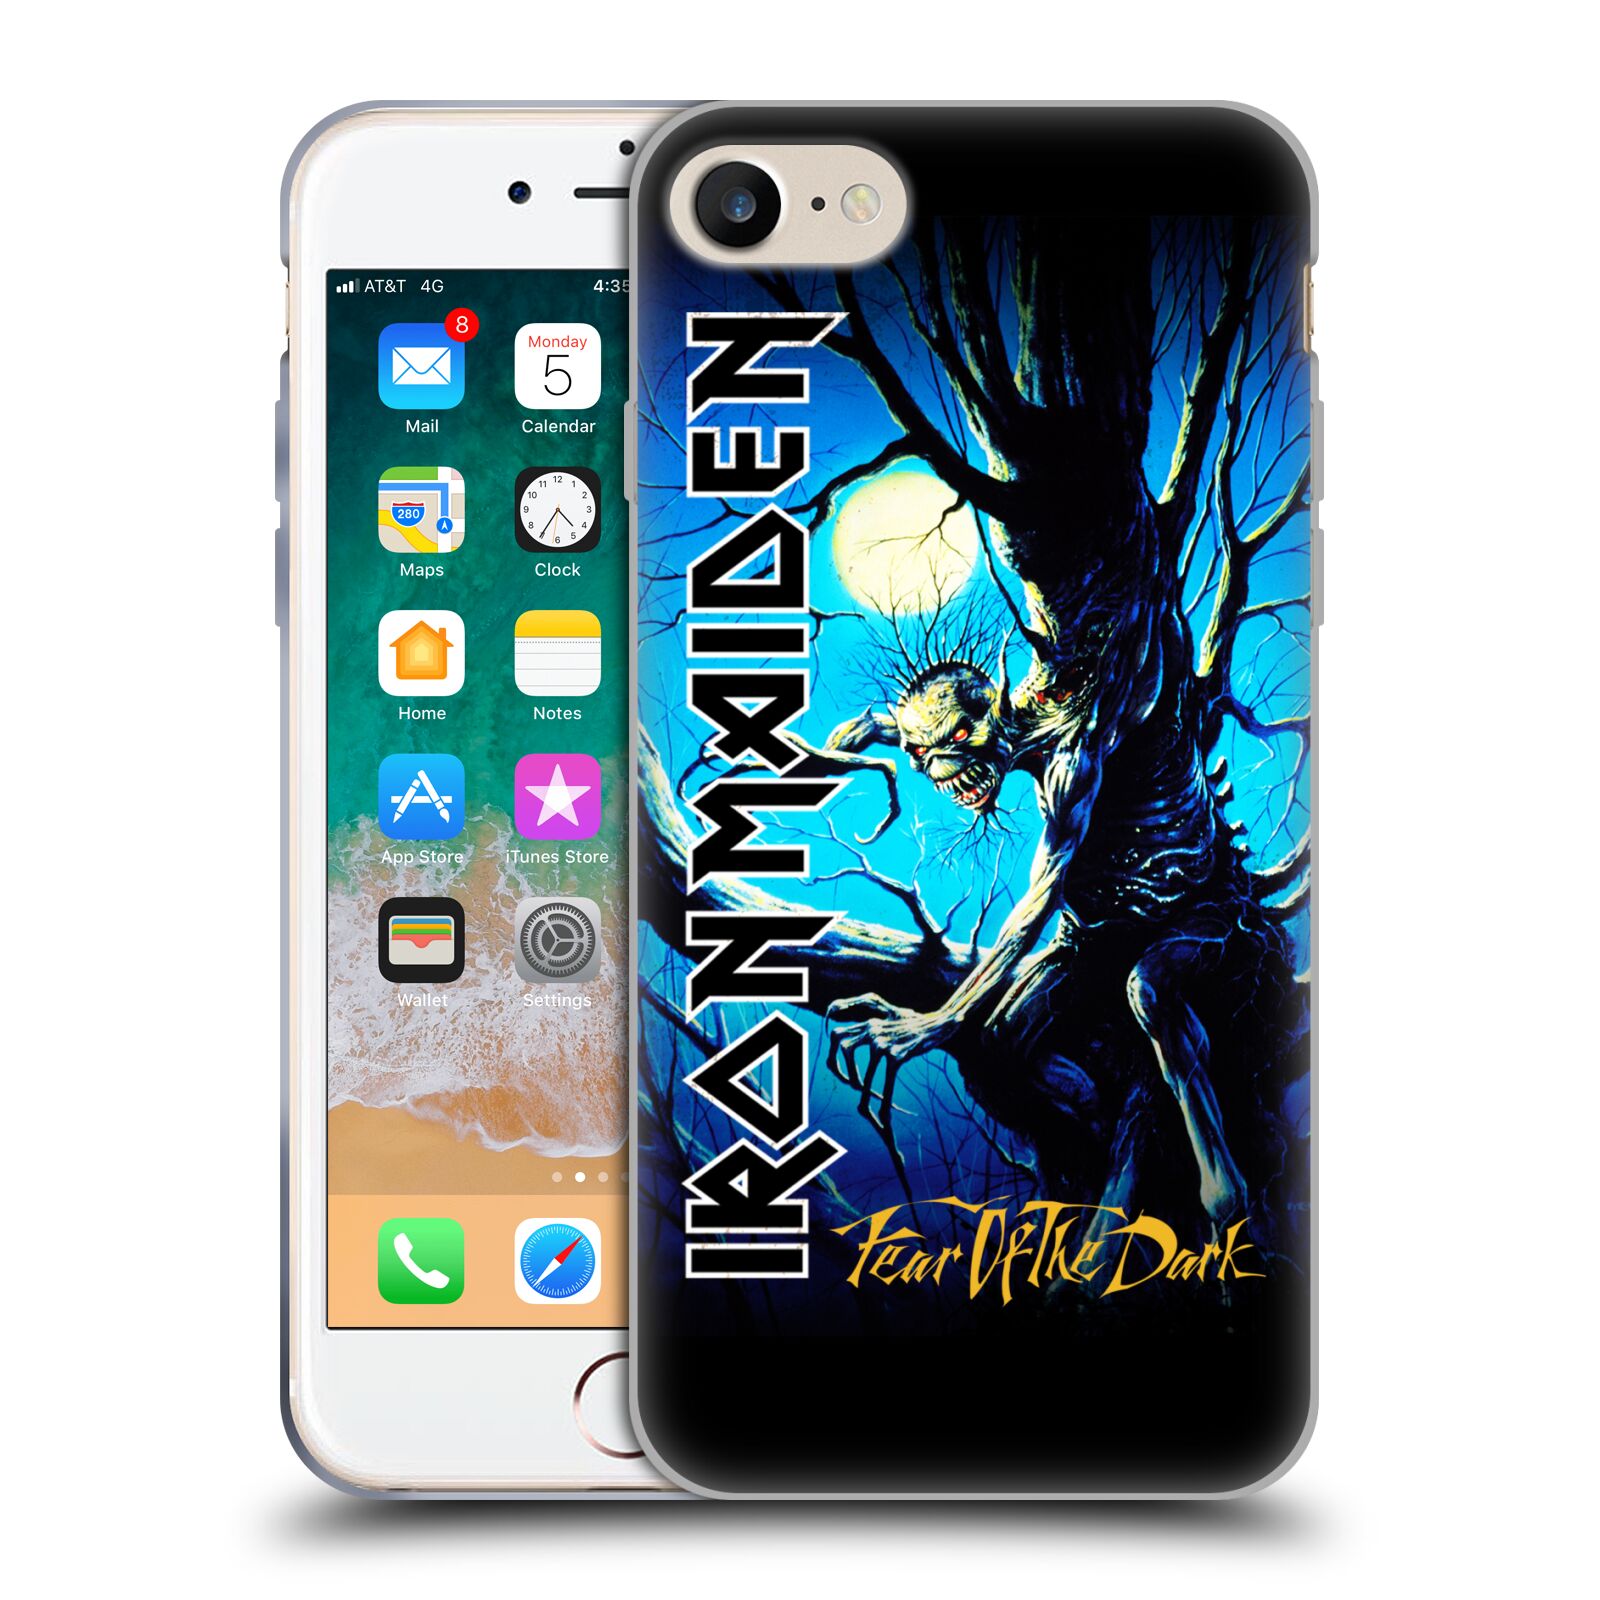 Silikonové pouzdro na mobil Apple iPhone 7 HEAD CASE - Iron Maiden - Fear Of The Dark (Silikonový kryt či obal na mobilní telefon s licencovaným motivem Iron Maiden Apple iPhone 7)